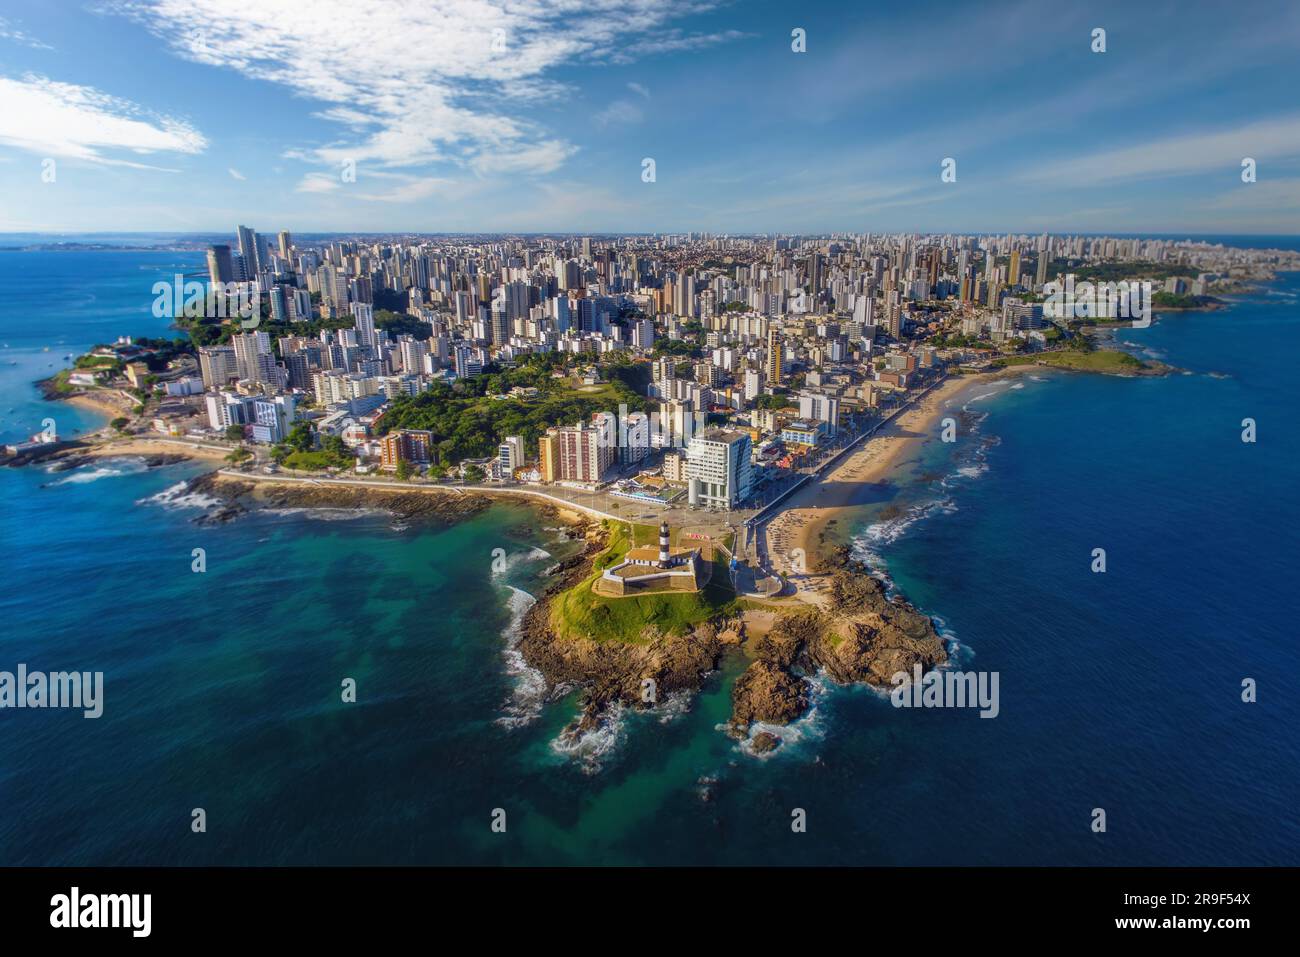 Aerial view of Salvador da Bahia, Brazil. Stock Photo